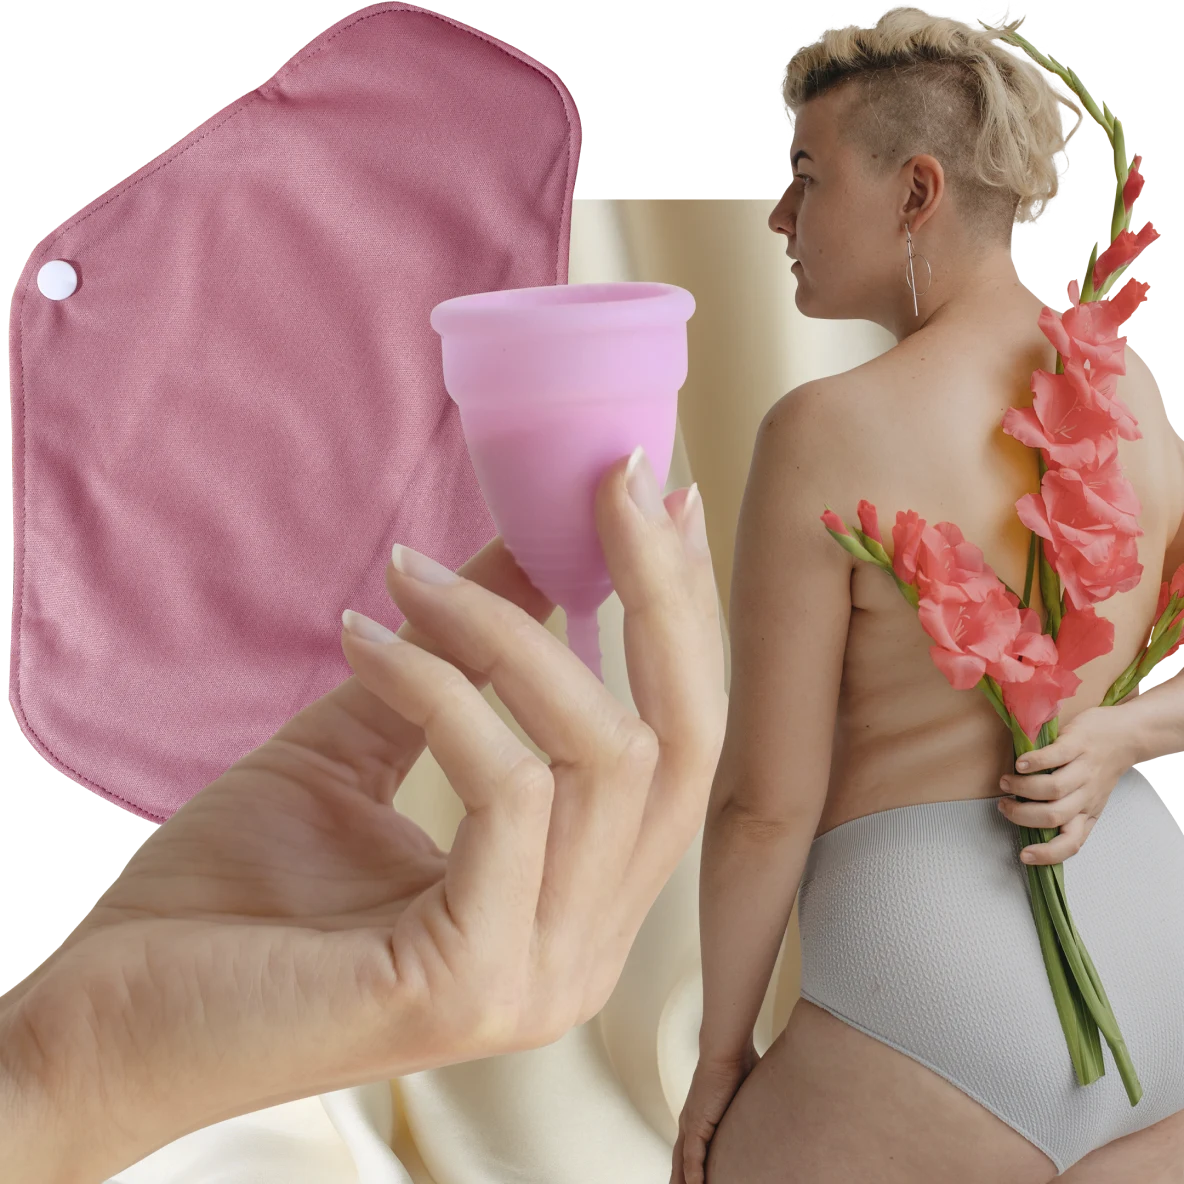 Mão de pessoa de pele branca segurando um coletor menstrual rosa. À esquerda, absorvente de pano rosa. À direita, mulher branca com cabelo loiro curto segura flores cor-de-rosa atrás das costas.